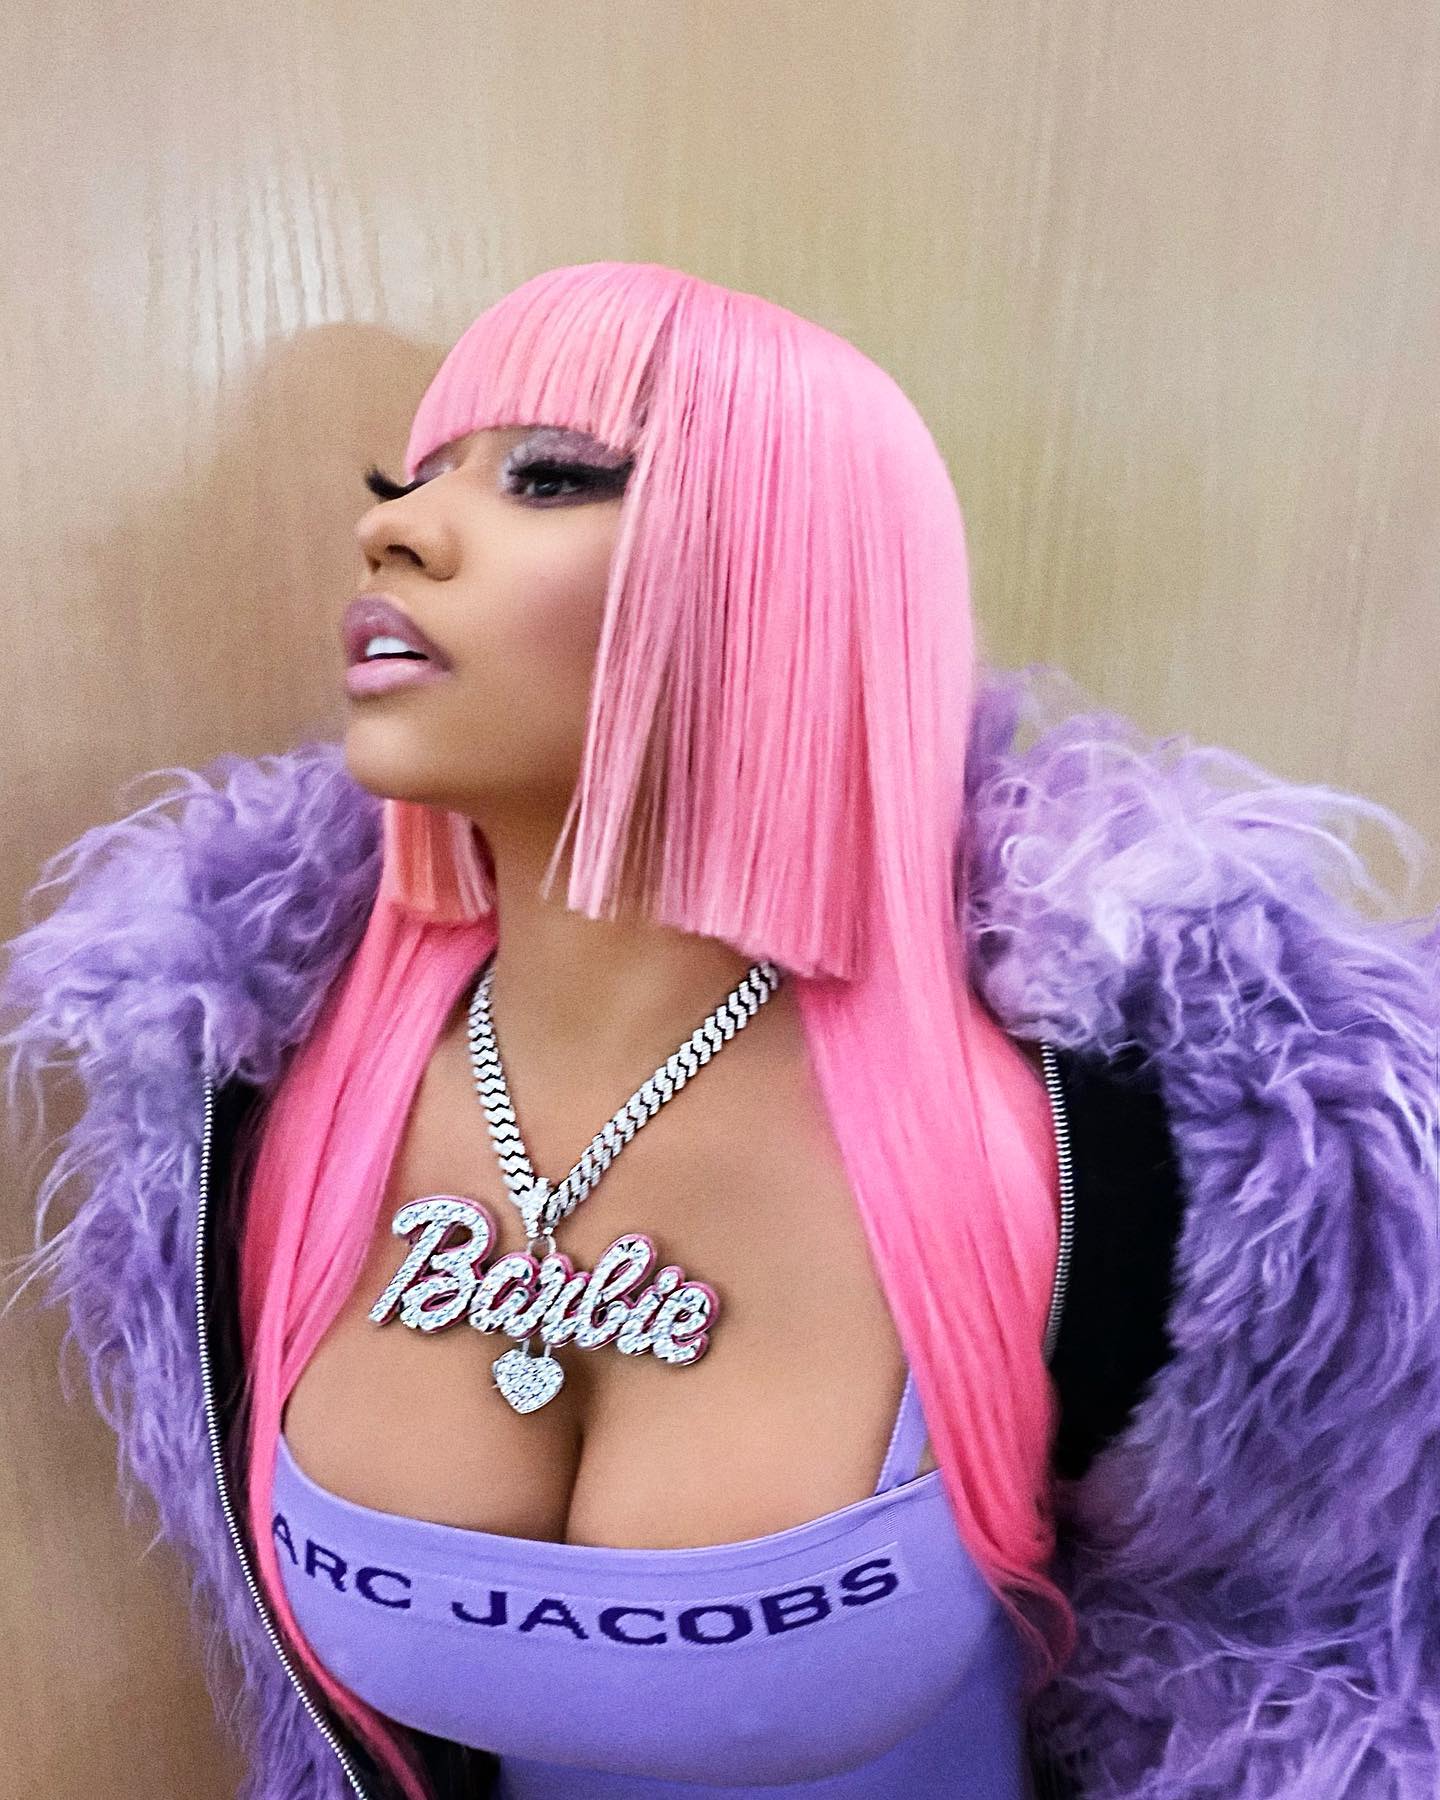 Nicki Minaj Goes Up! - Photo 14